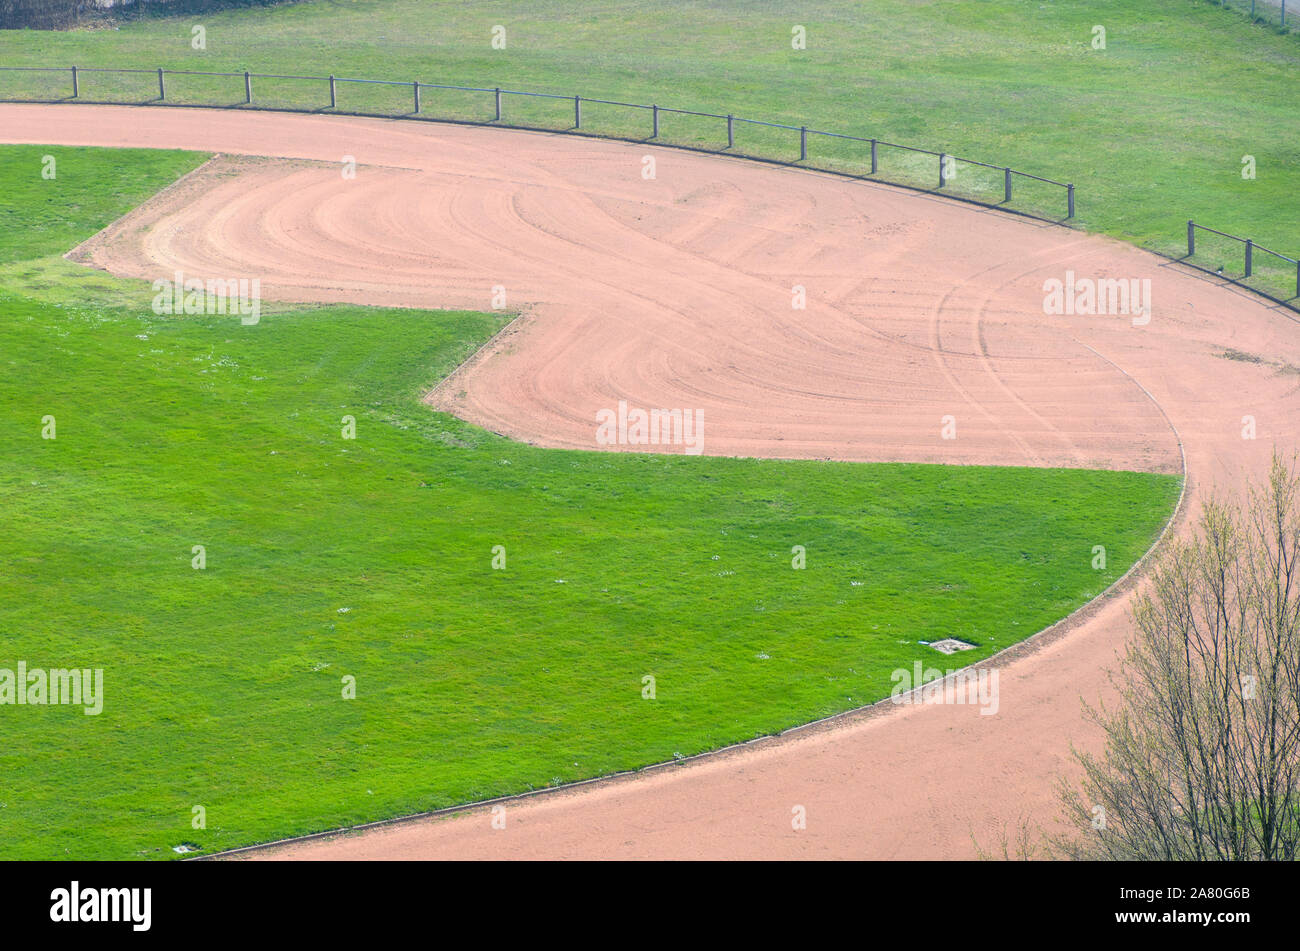 Sports de plein air ou ovale stade avec piste de gravier pour la formation ou les races niché dans des pelouses dans un elevated view Banque D'Images